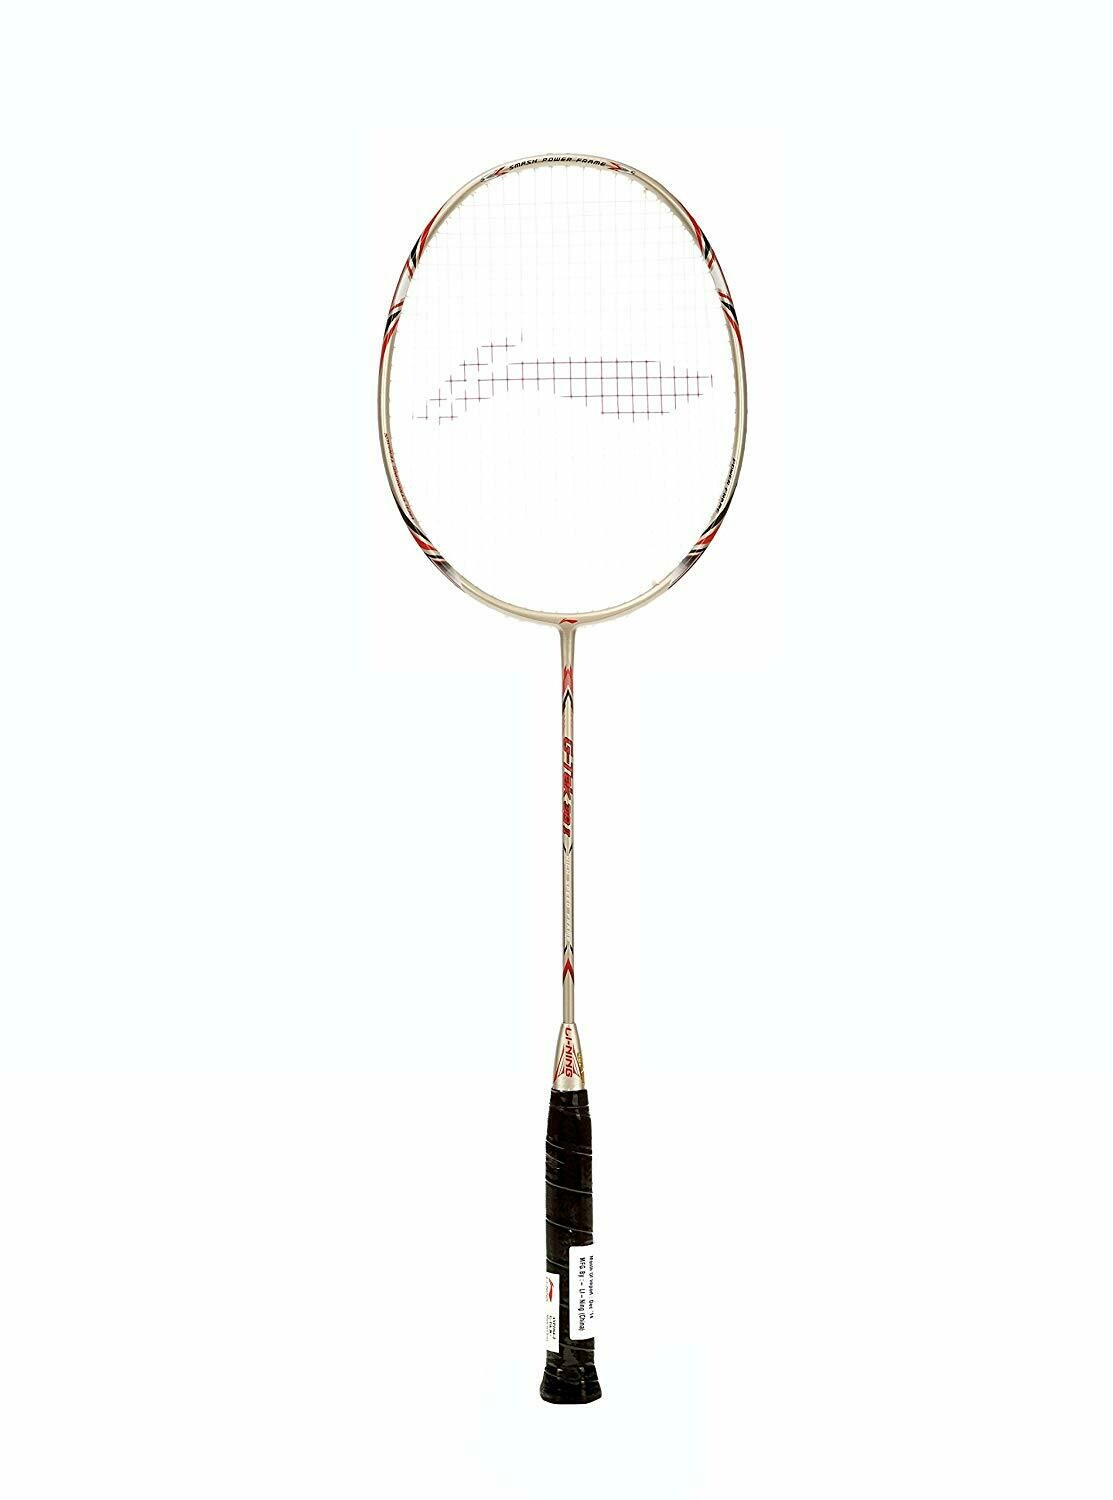 LI-NING G-Tek 38-II Badminton Racquet (Strung), S2 Grip Size, (Gold)